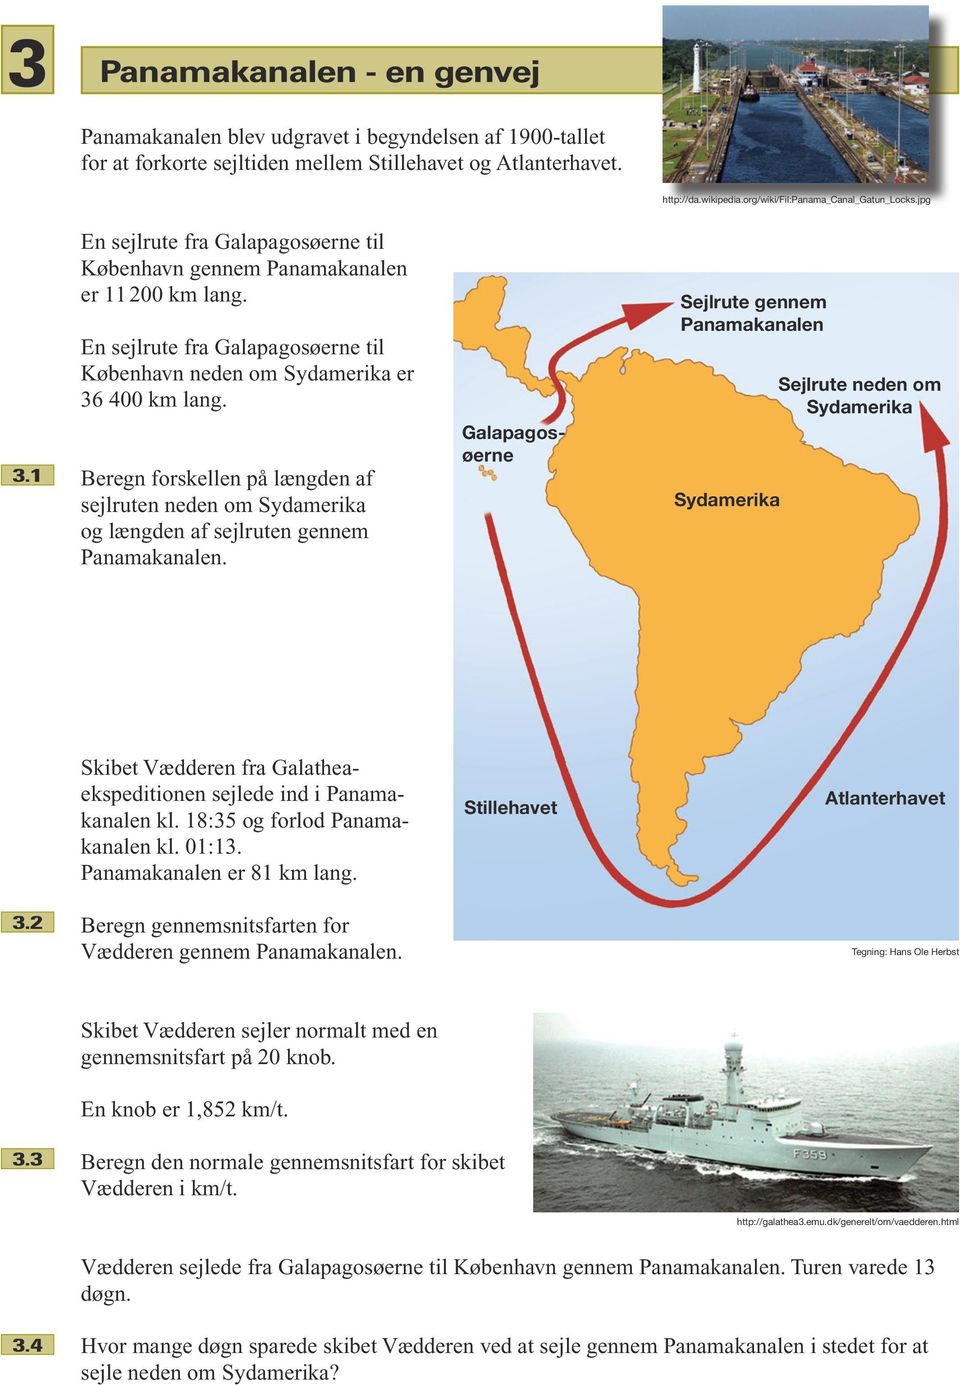 En sejlrute fra Galapagosøerne til København neden om Sydamerika er 36 400 km lang. 3.1 Beregn forskellen på længden af sejlruten neden om Sydamerika og længden af sejlruten gennem Panamakanalen.